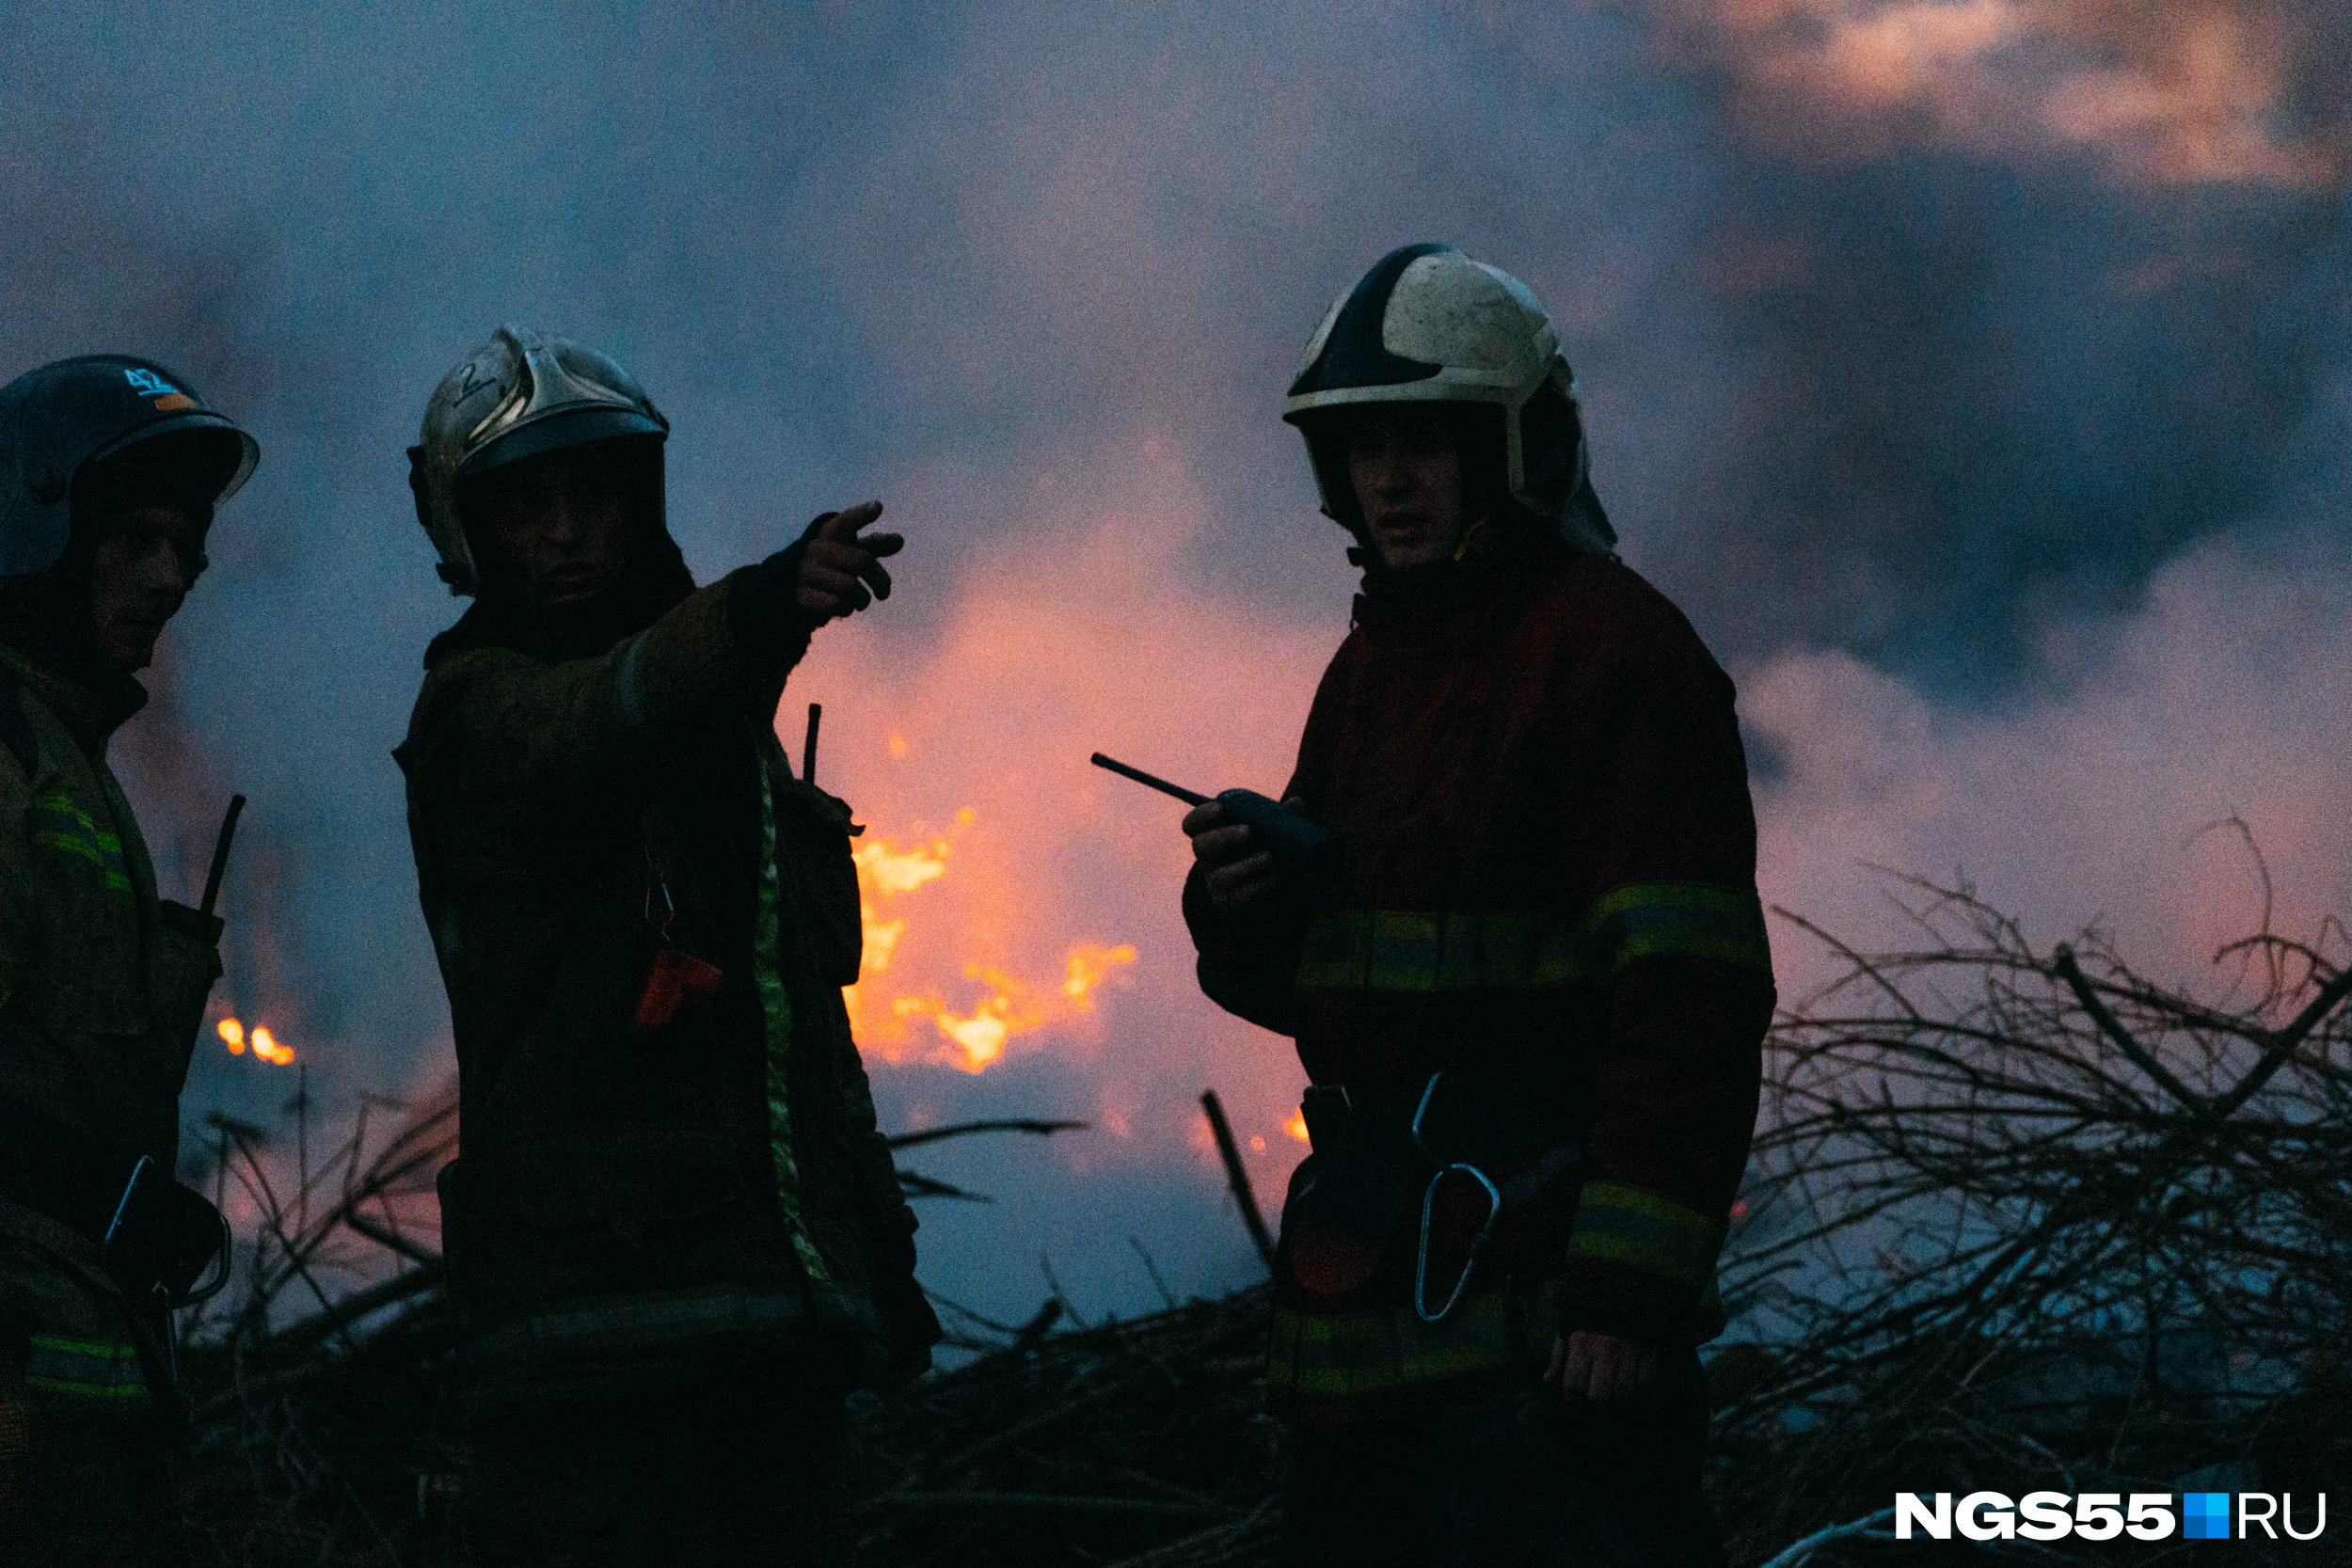 Пожарные подбирались к огню со всех сторон, лишь бы он не ушел в лес или на постройки